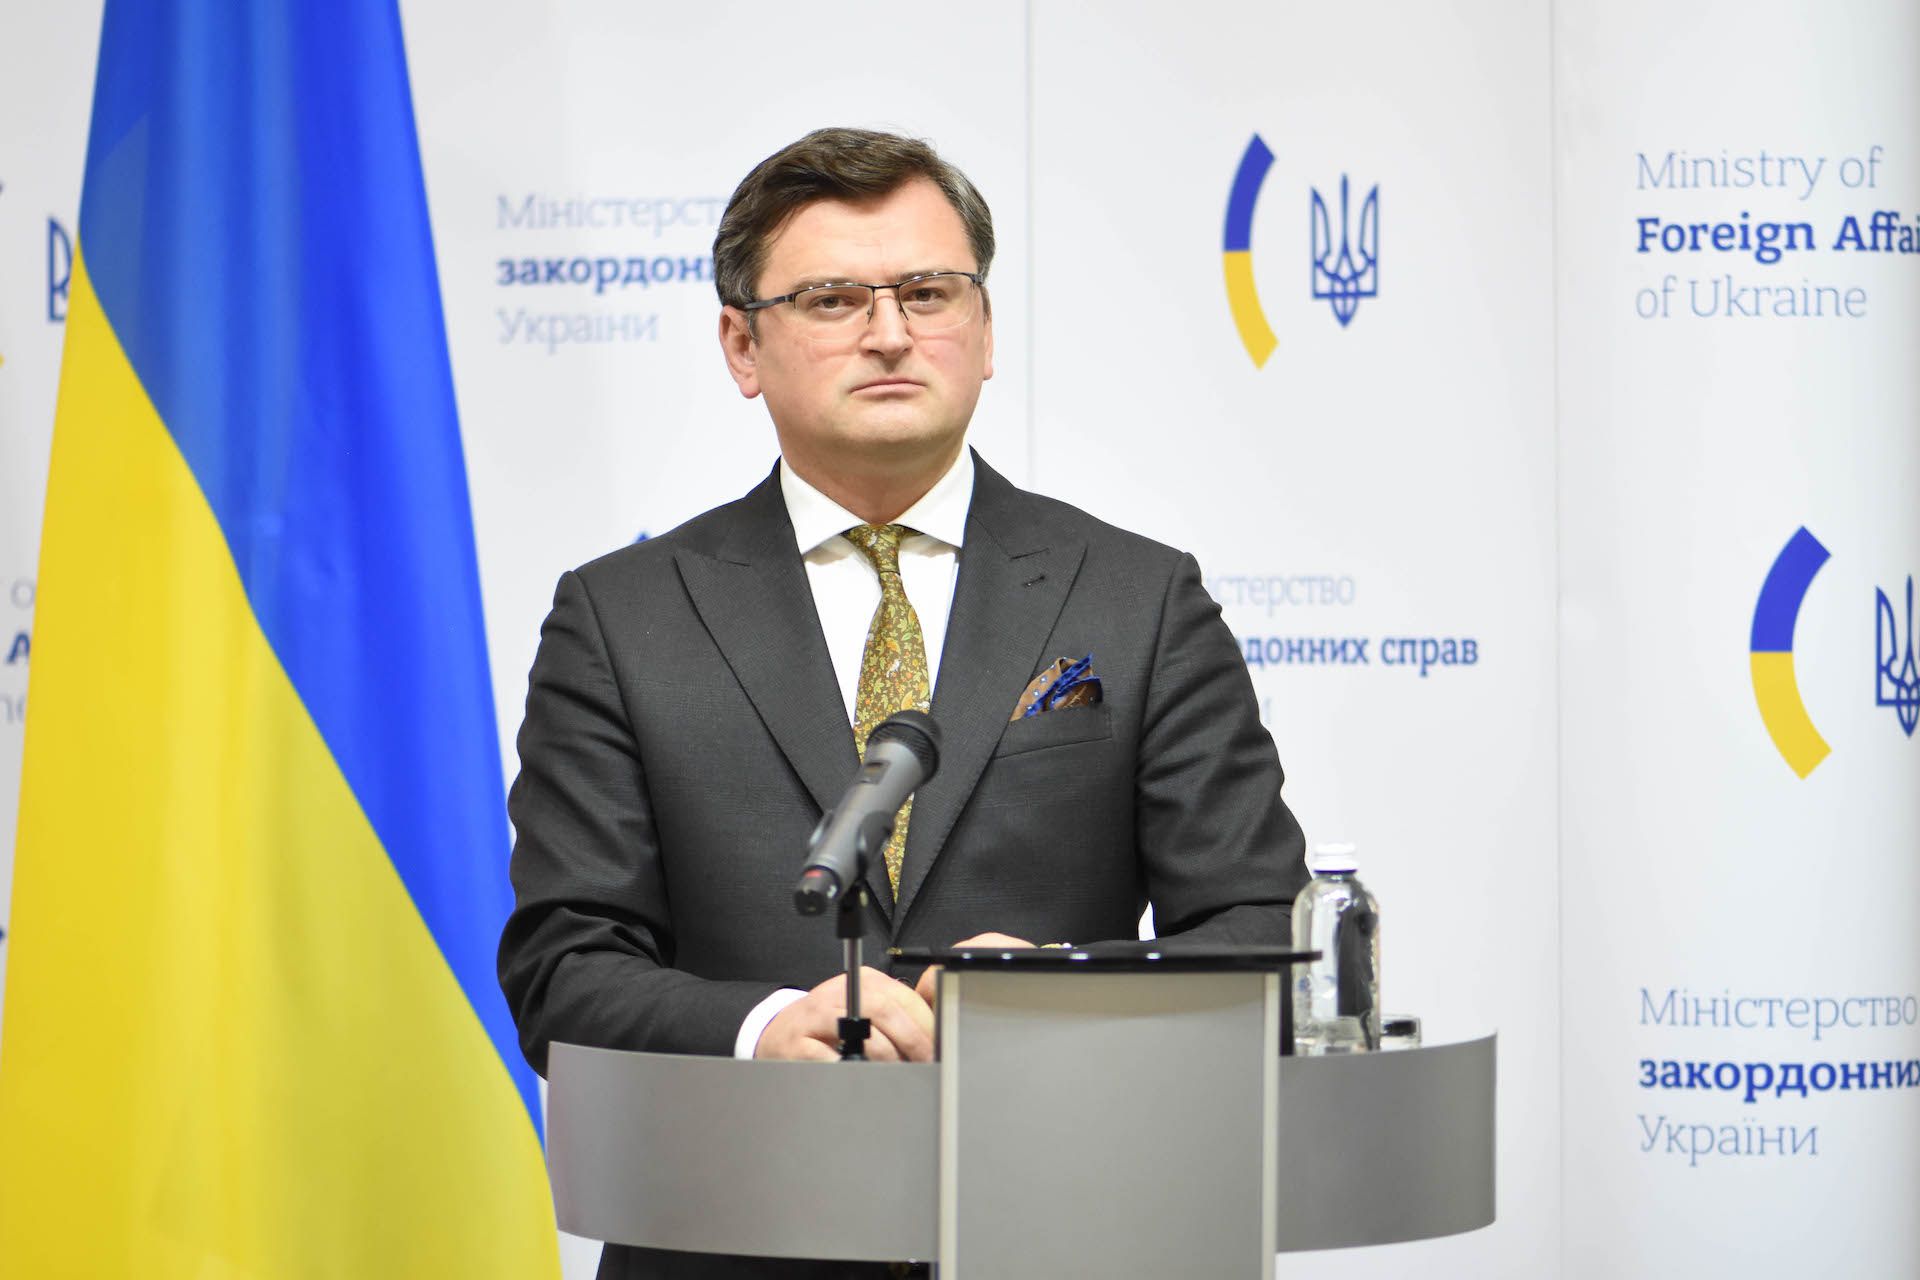 Vor Münchner Sicherheitskonferenz: Ukraine konkretisiert Forderungen nach Kampfjets - ZLIVE-NEWS